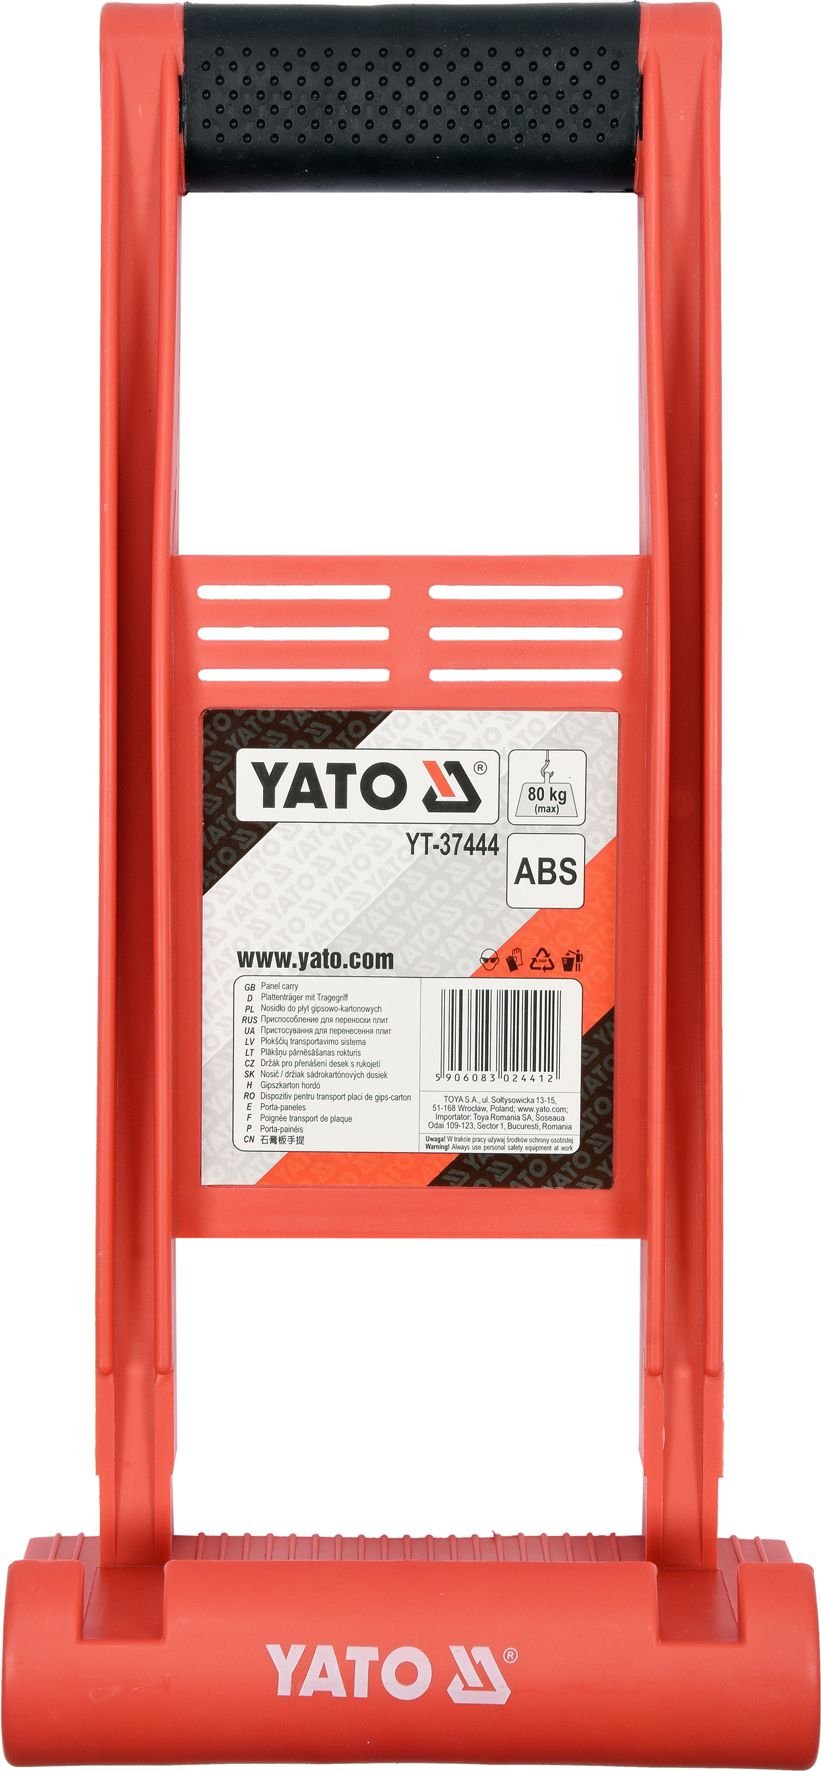 Suport Yato pentru plăci de gips-carton, capacitate de încărcare până la 80 kg (YT-37444)